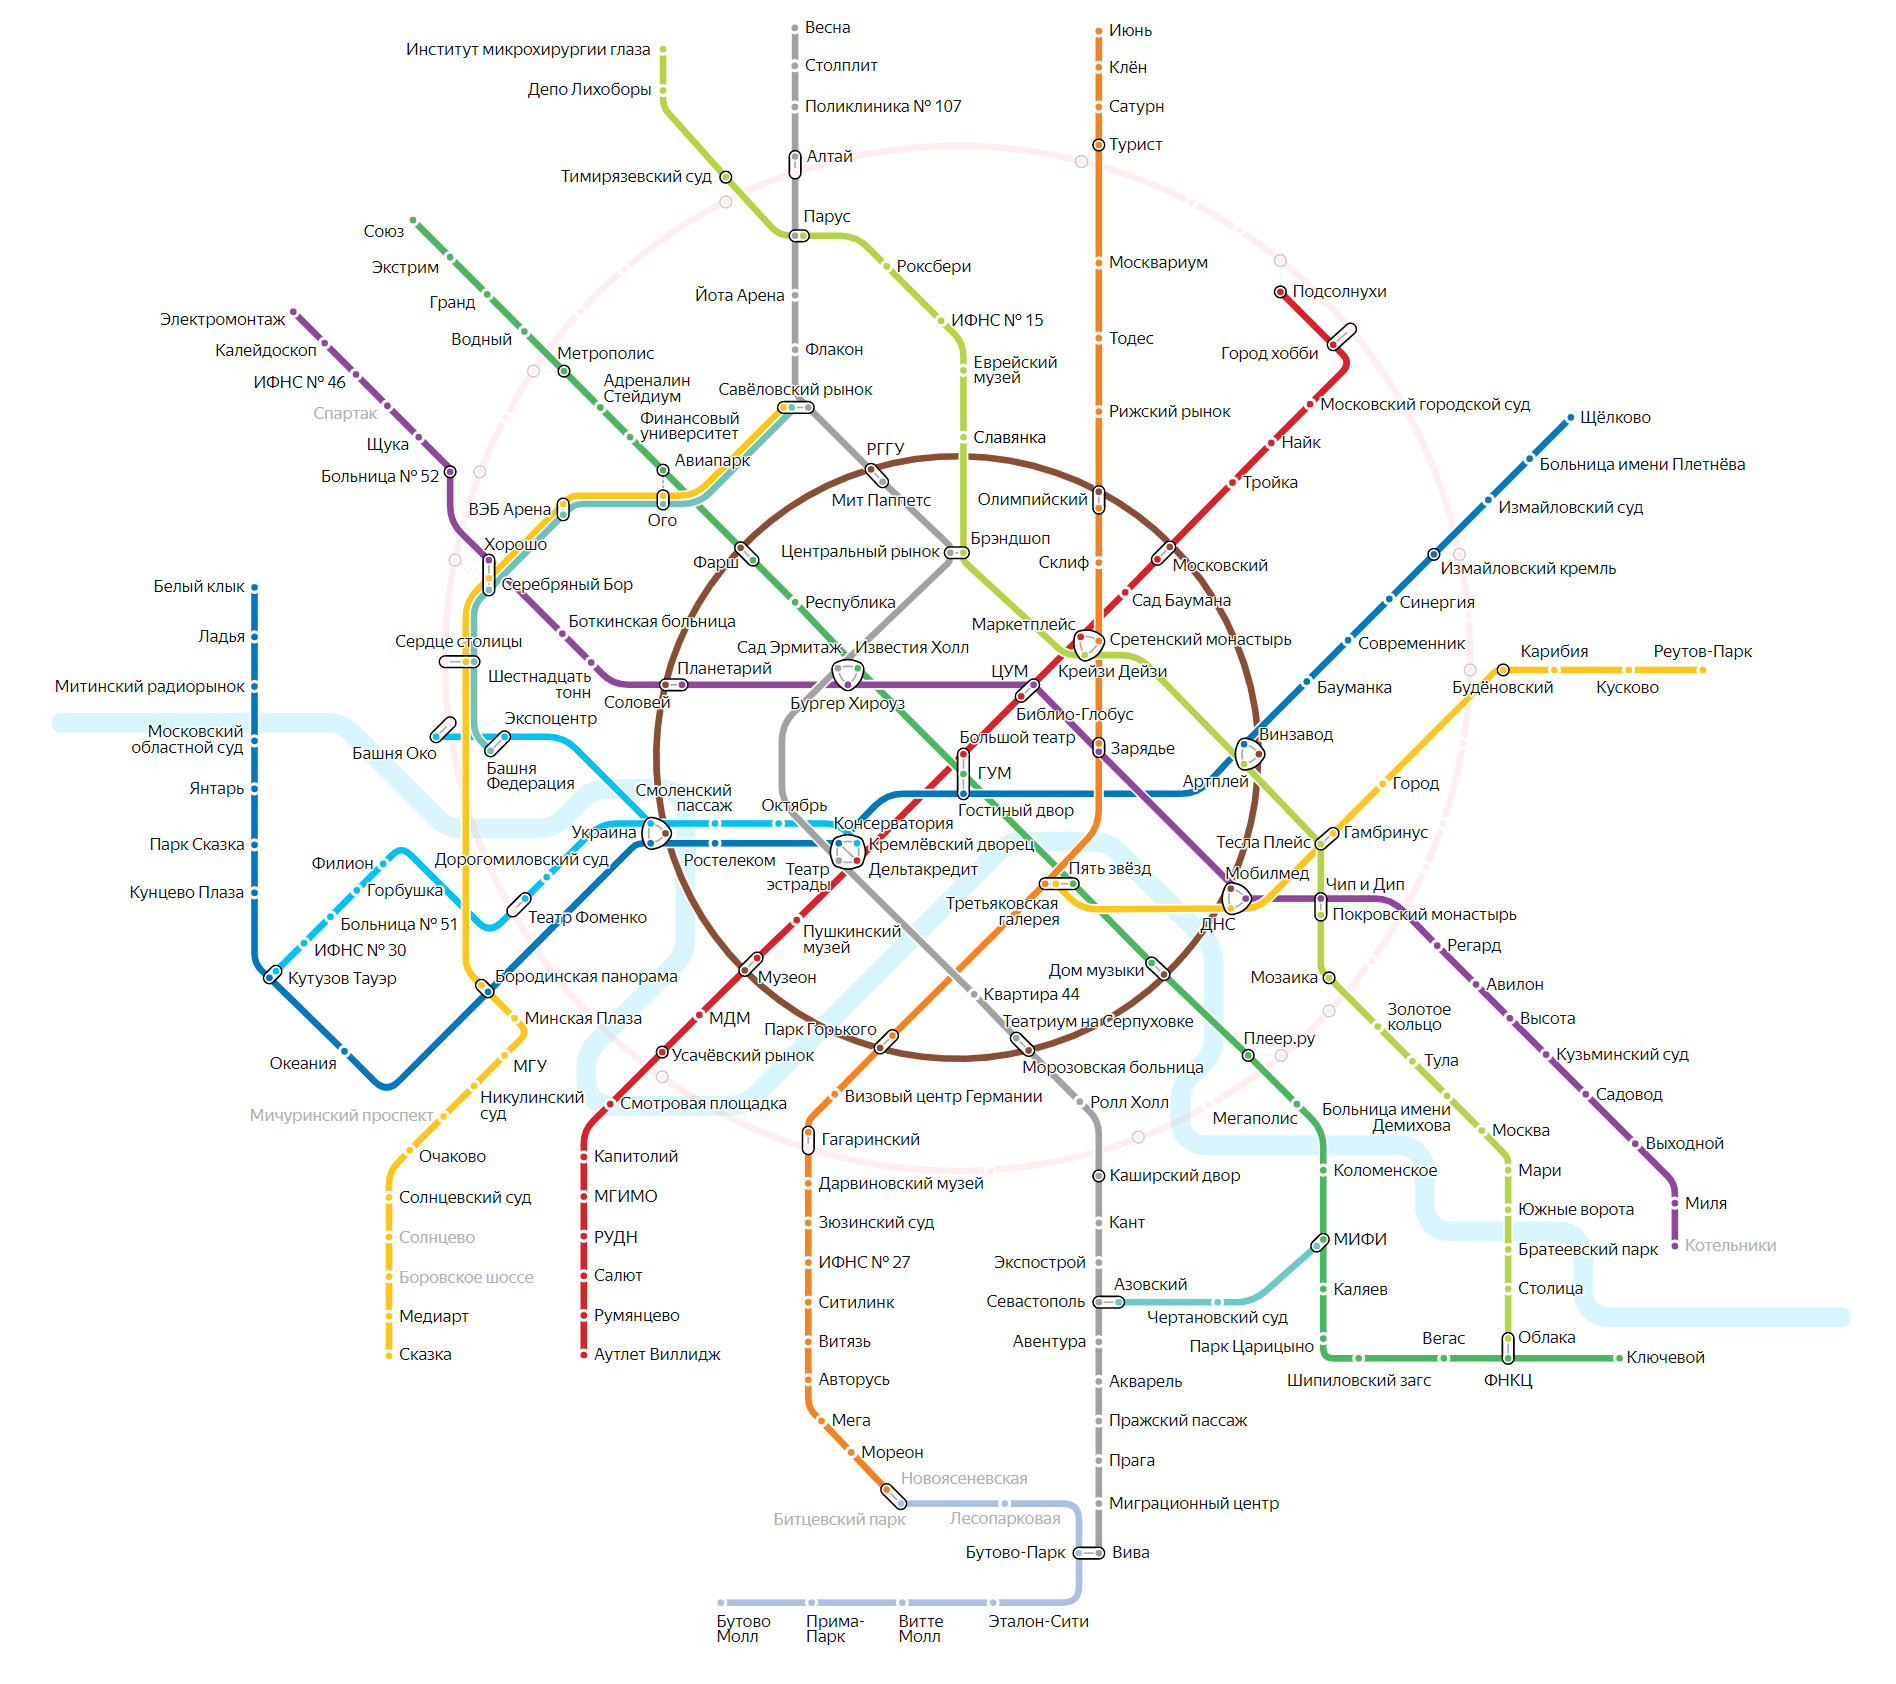 интерактивная карта метро москвы 2020 года с новыми станциями на карте как проверить подписки на мтс россия